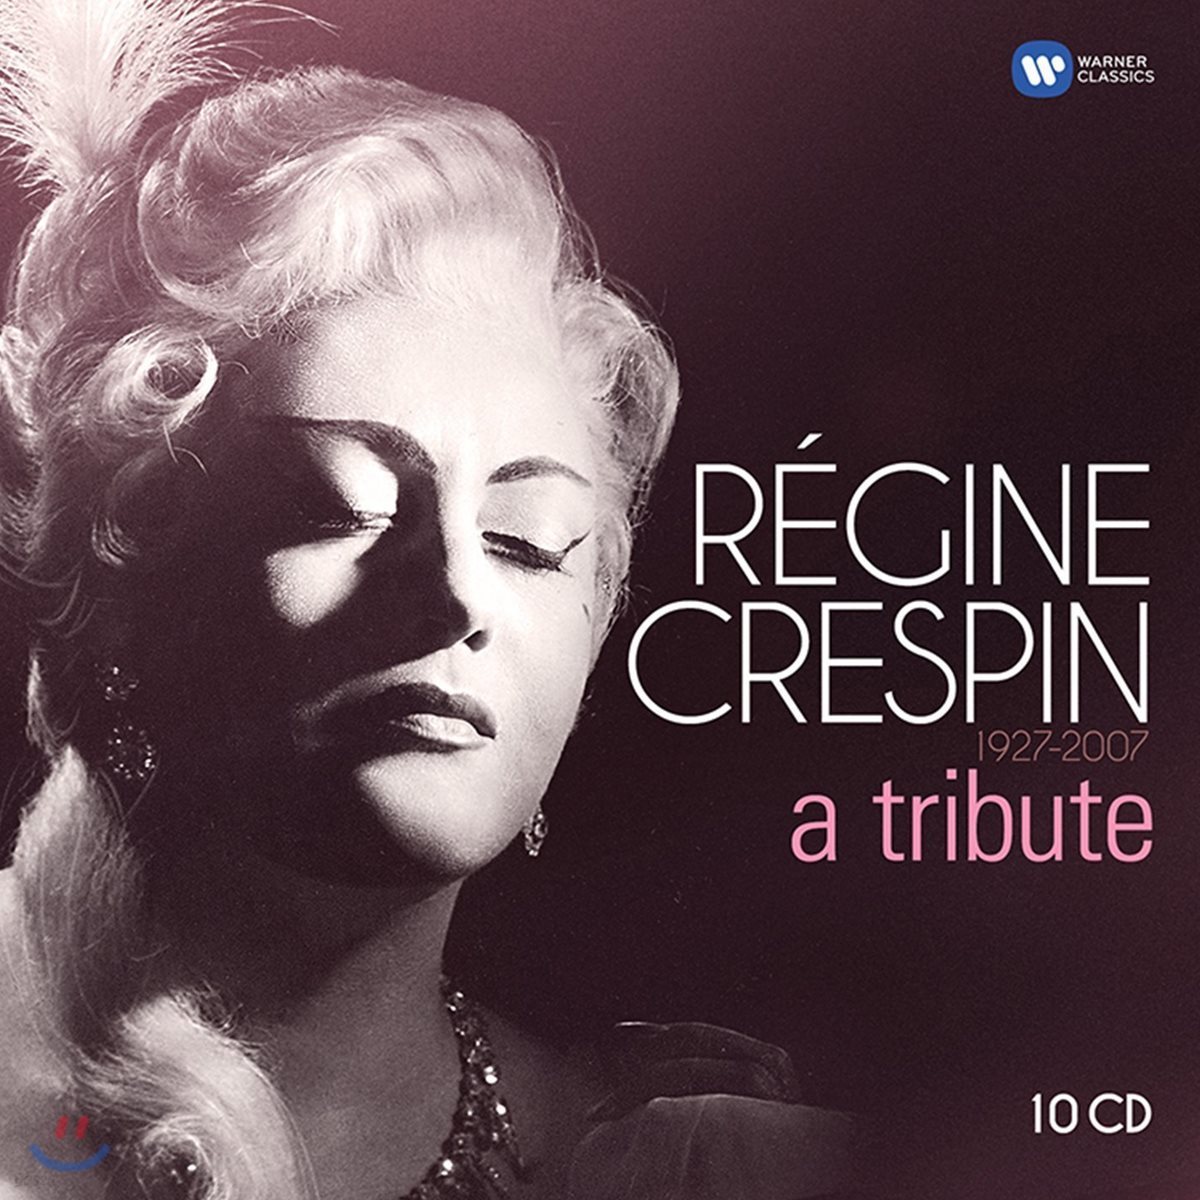 Regine Crespin 레진 크레스팽의 초상 (1927-2007 A Tribute)